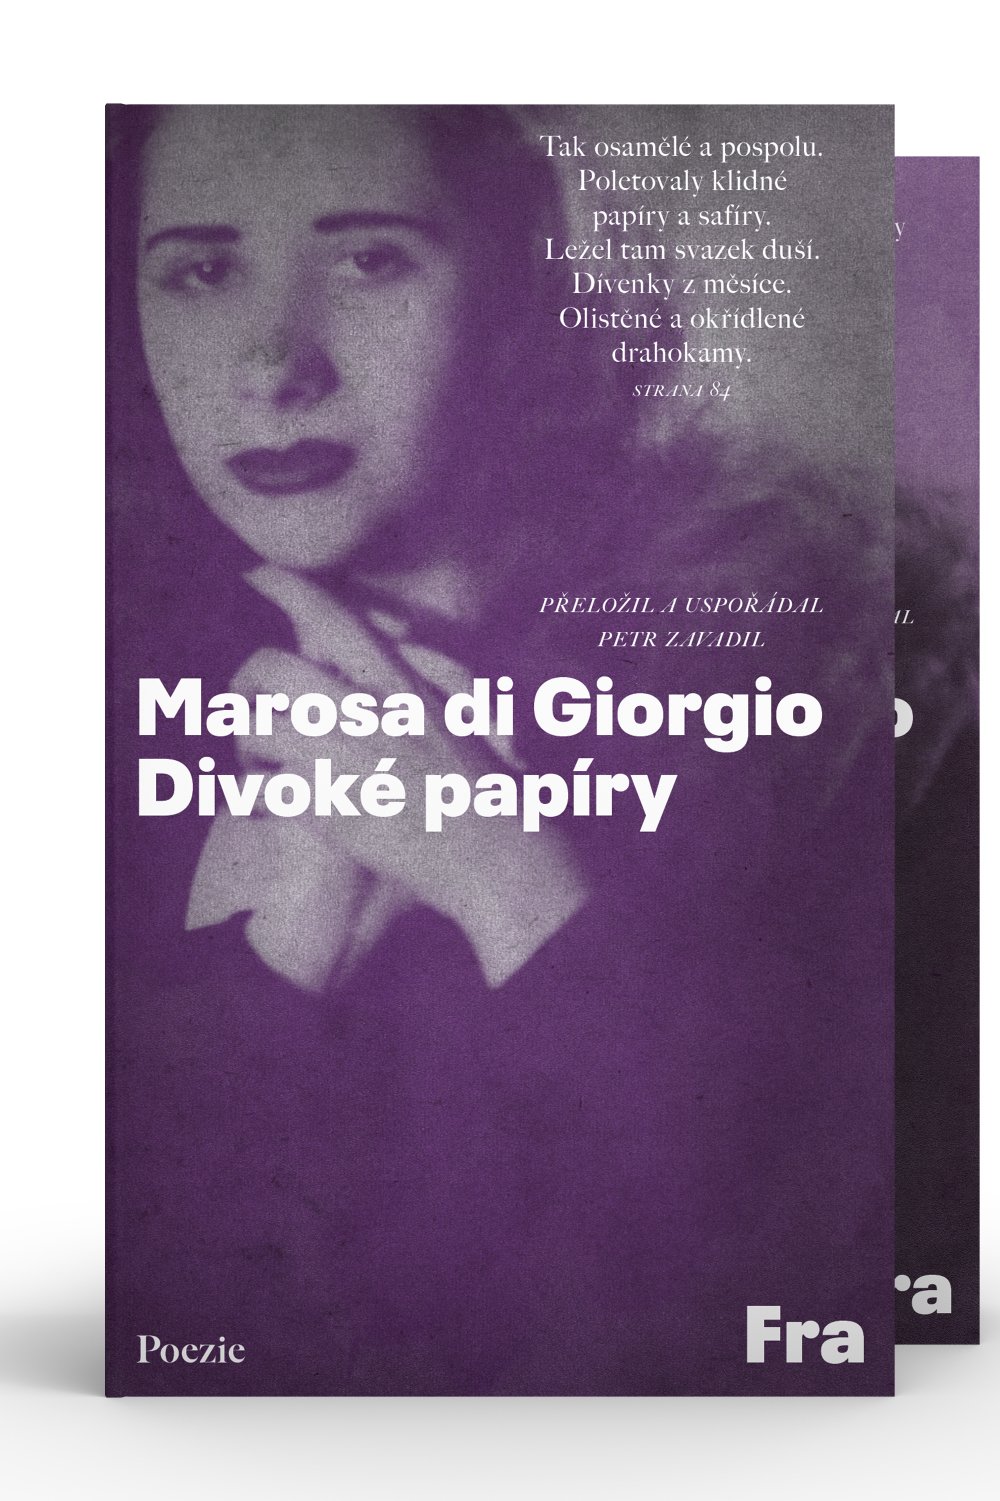 Marosa di Giorgio, Divoké papíry